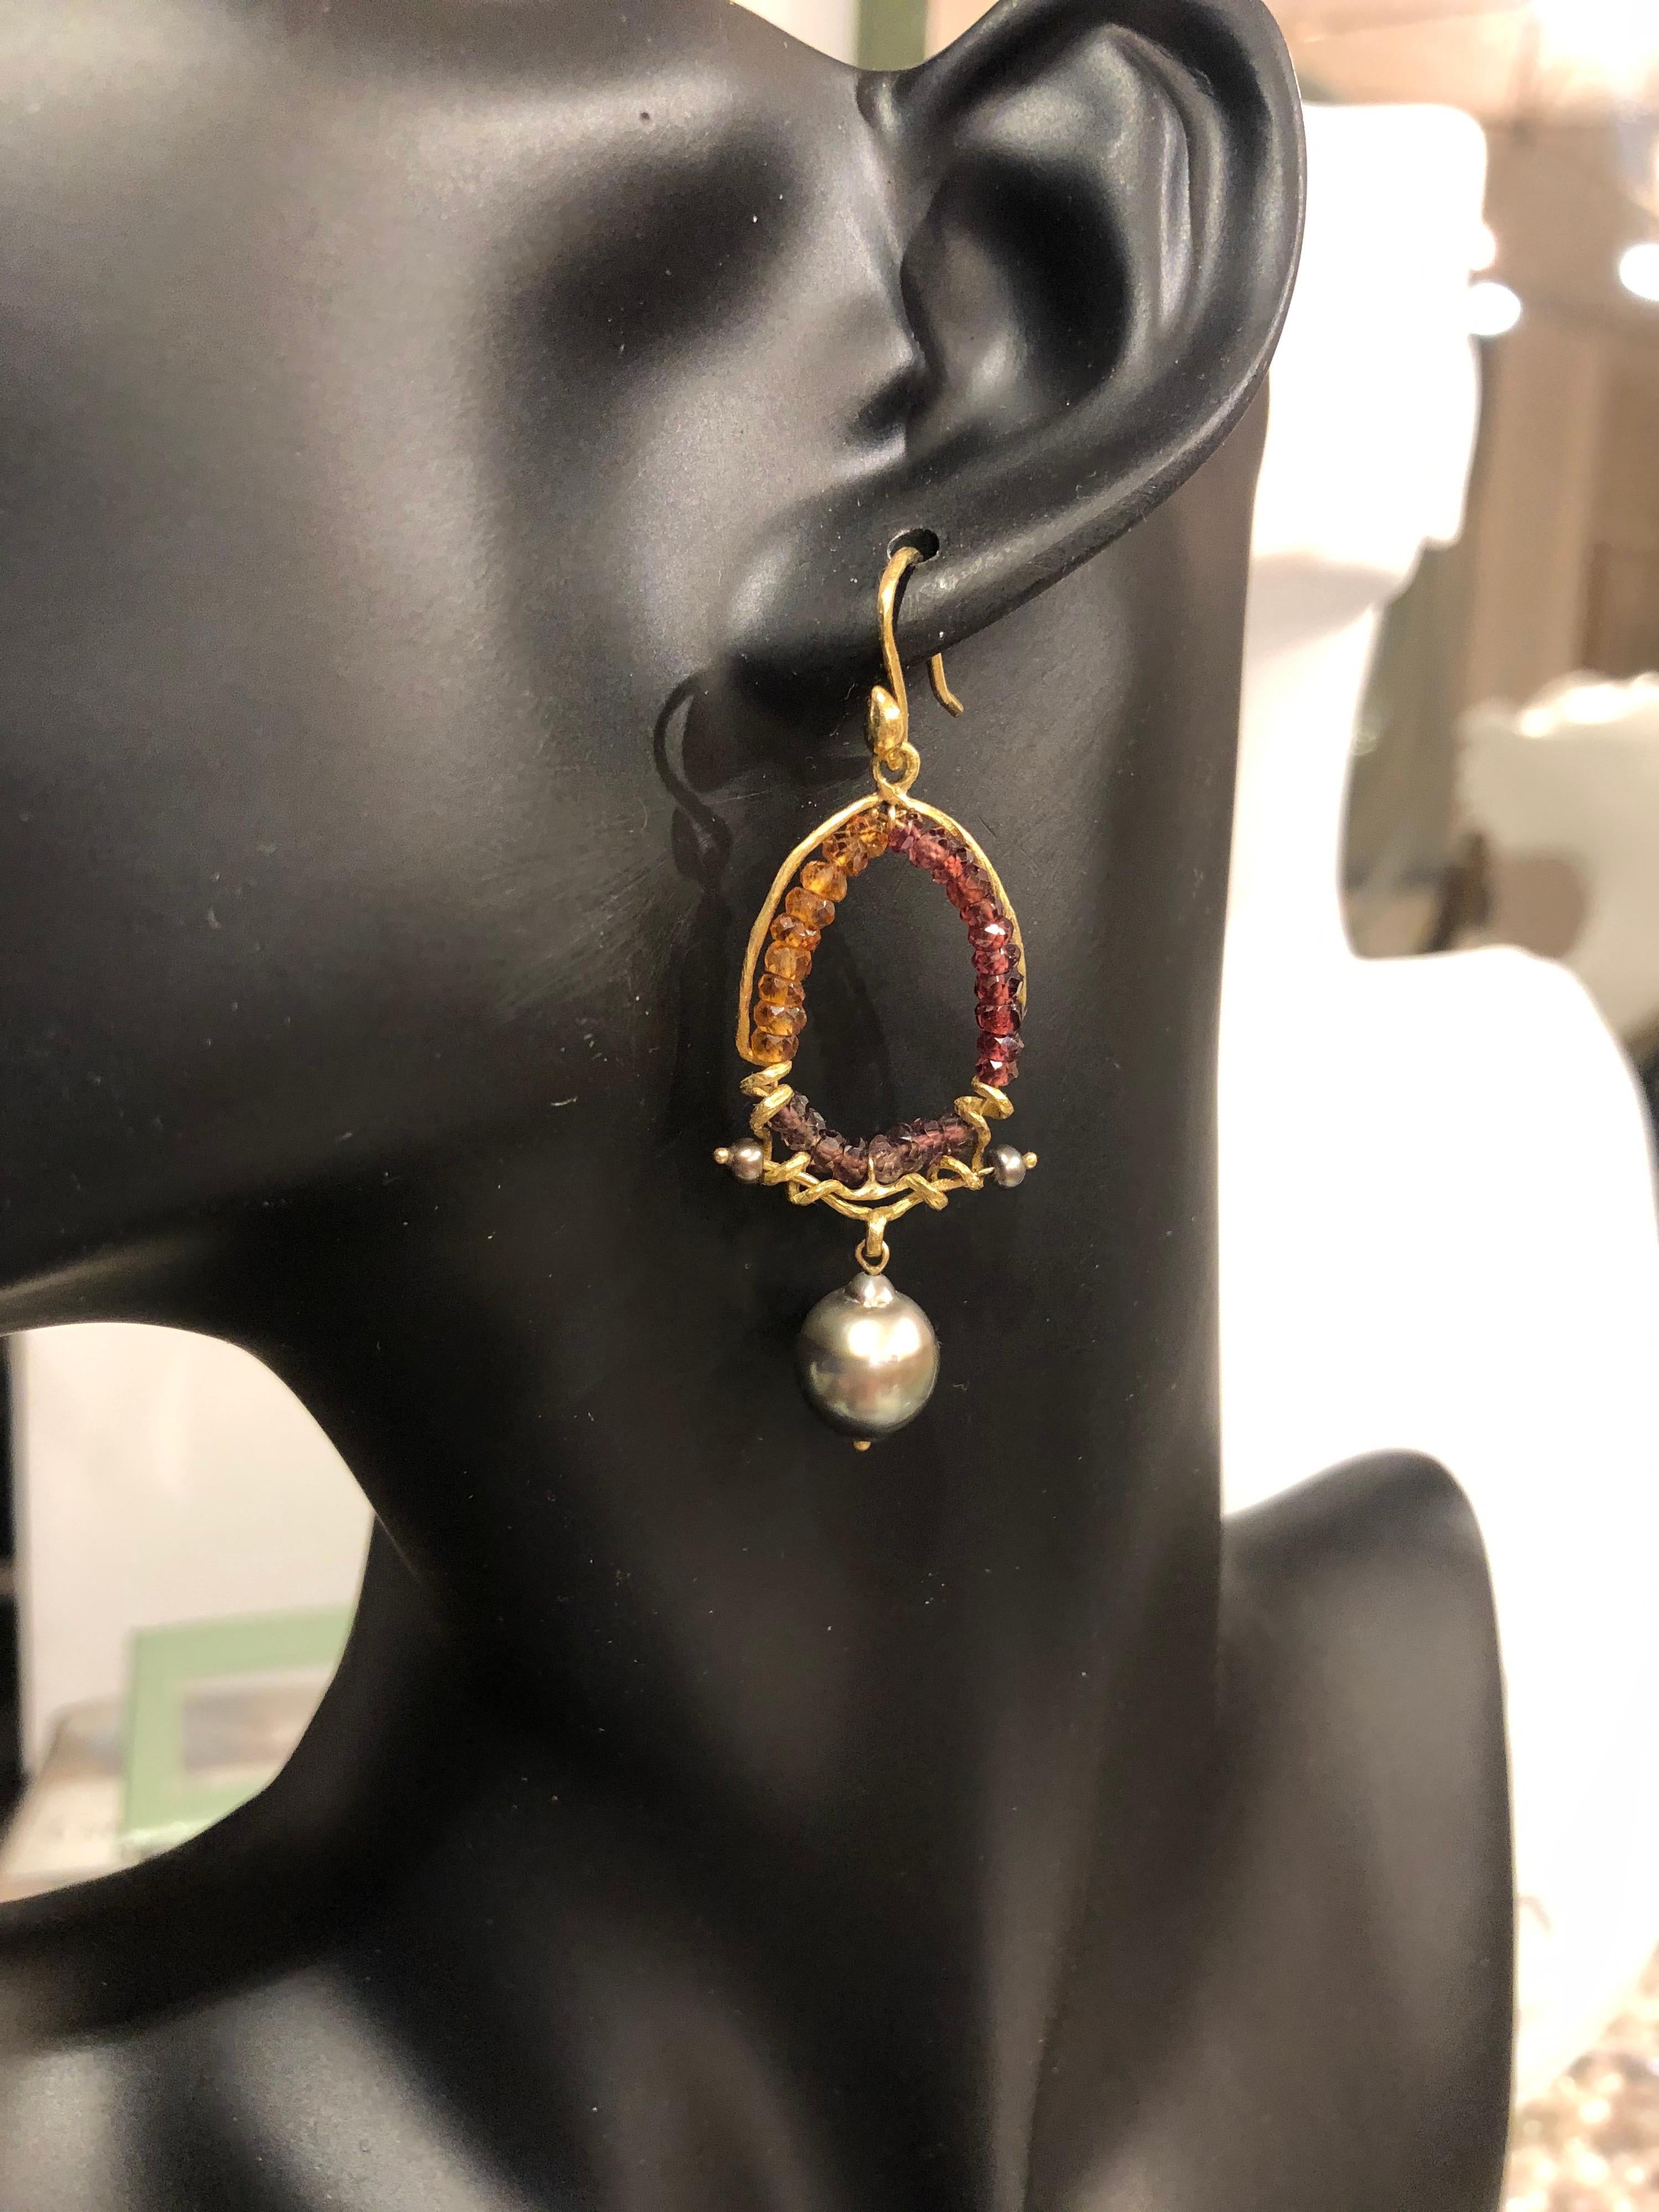 Es ist nicht leicht, mit den schwarzen Tahiti-Perlen und ihrem rauchigen Schimmer zu konkurrieren, aber glücklicherweise können sich die vielfarbigen Saphire und rosa Zirkone in diesem skulpturalen, handgegossenen Ohrring, der mit 18-karätigen